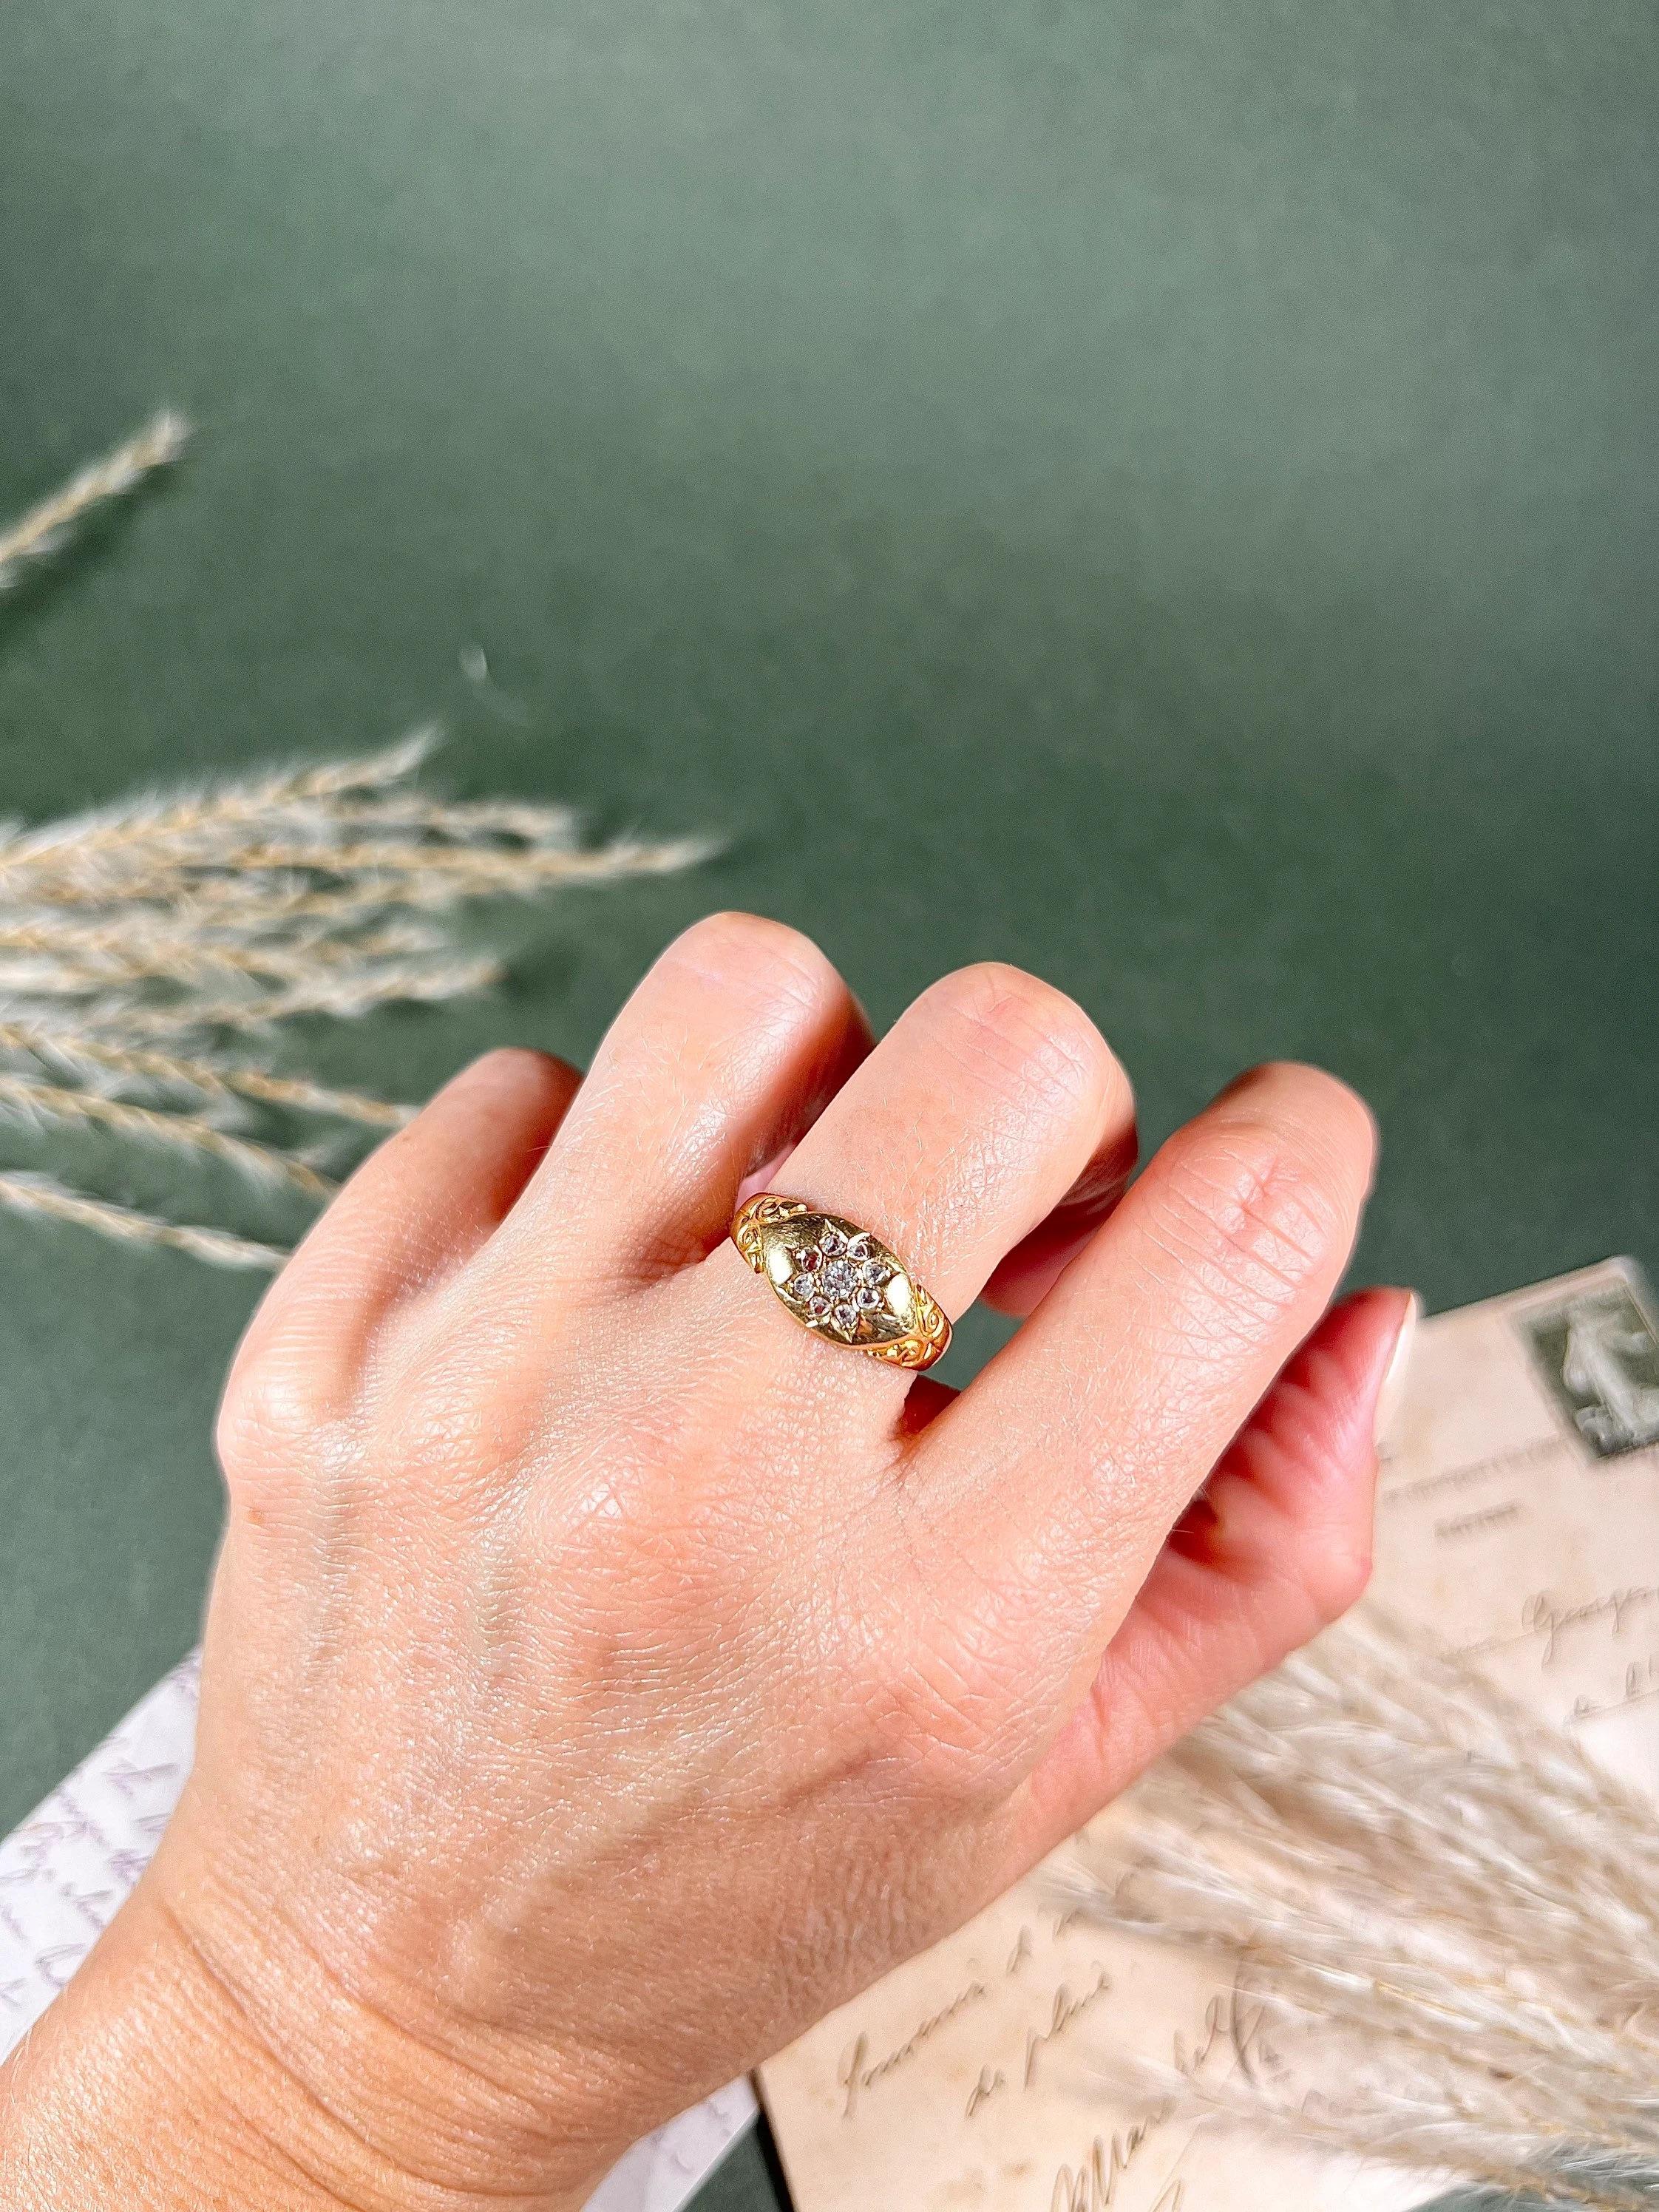 Bague victorienne ancienne 

Or 18 carats 

Poinçonné Birmingham 1889

I.L.A. L.B. 

Jolie bague victorienne de style gitan. Serti de diamants naturels en formation florale, avec de jolies épaules à volutes. 

La hauteur de l'anneau est d'environ 8